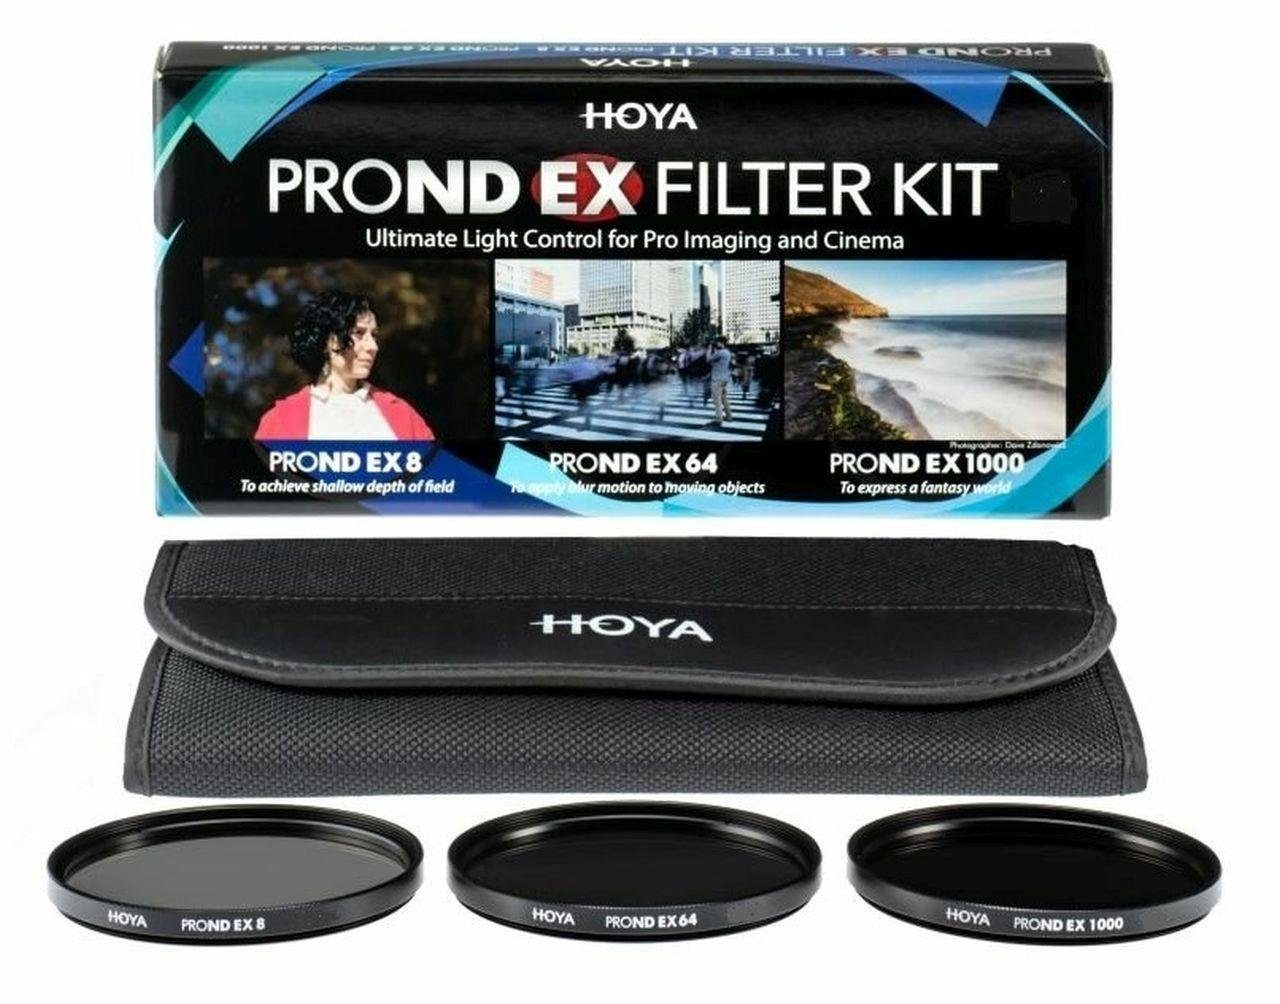 Hoya PROND EX ND Filter Set 8/64/1000 82mm Objektivzubehör